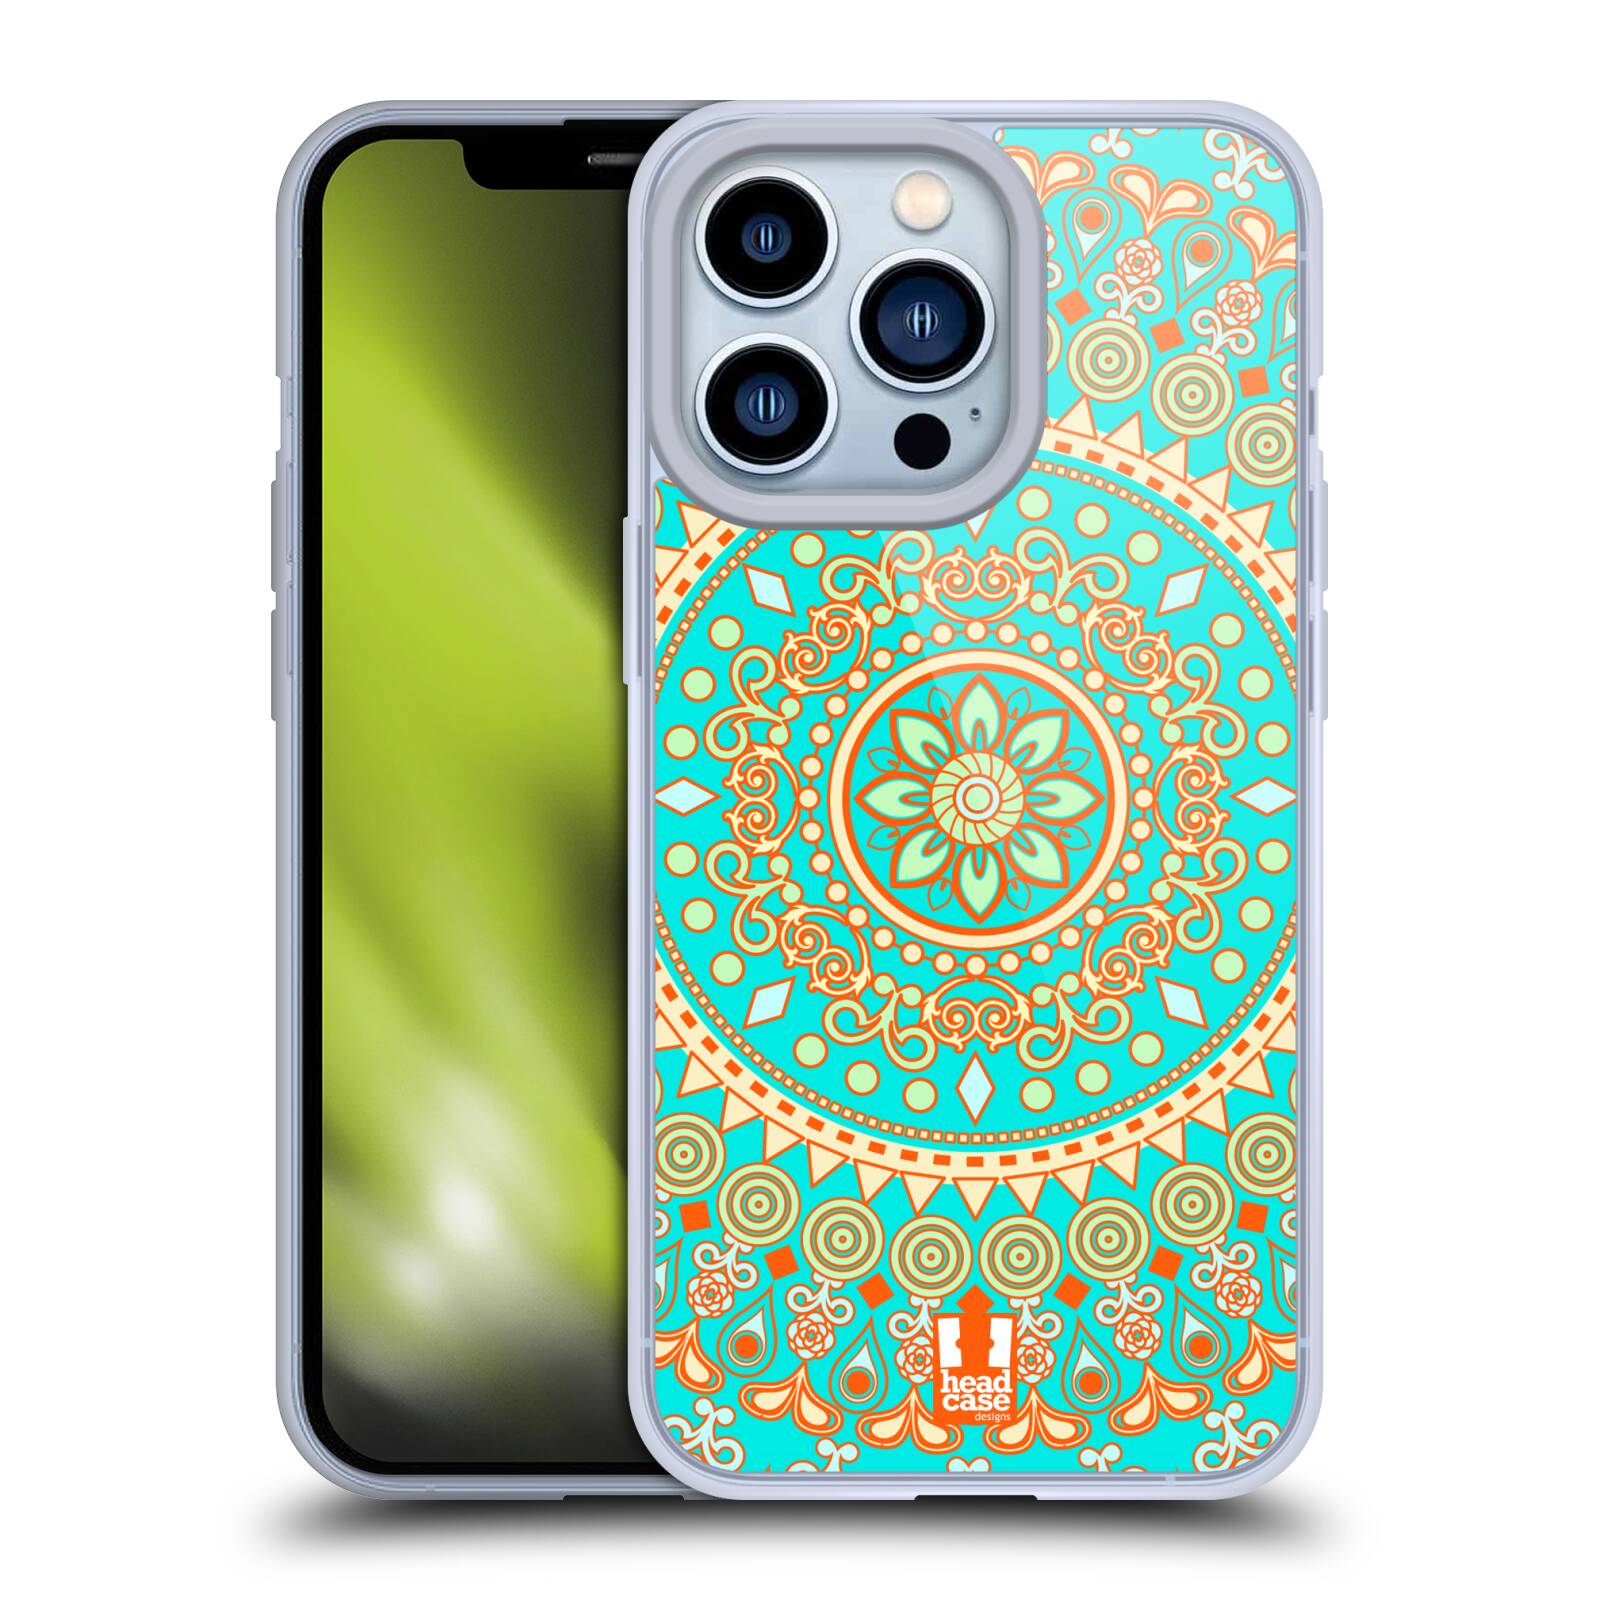 Plastový obal HEAD CASE na mobil Apple Iphone 13 PRO vzor Indie Mandala slunce barevný motiv TYRKYSOVÁ, ZELENÁ